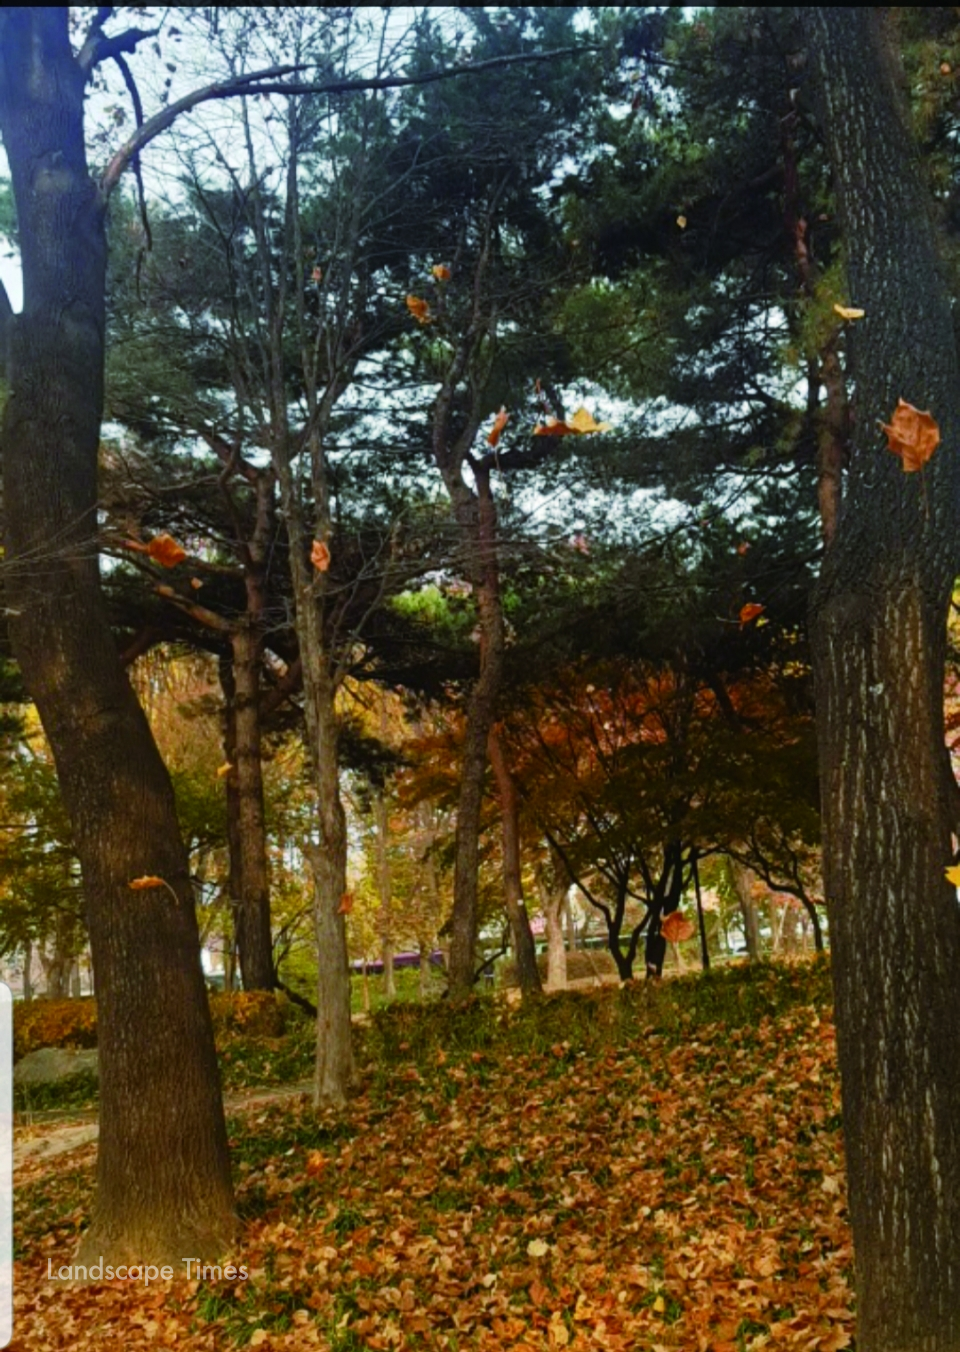 땅 위의 풀들과 속삭이는 낙엽들